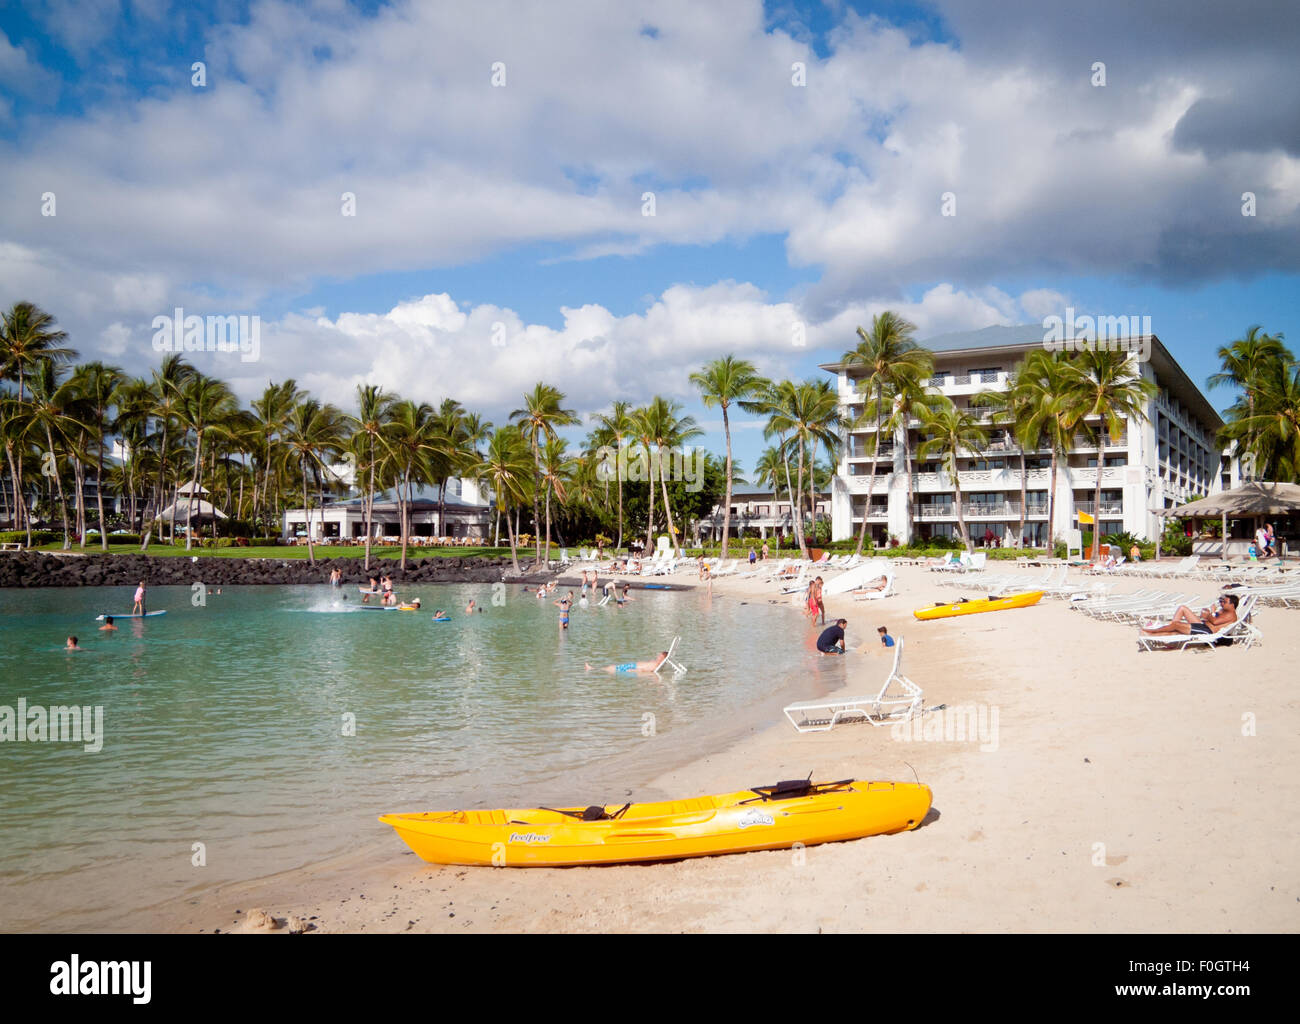 Ein Blick auf den Strand und das Eigentum an dem Fairmont Orchid, ein Hotel und Resort an der Kohala Coast, Hawai ' i (Hawaii). Stockfoto